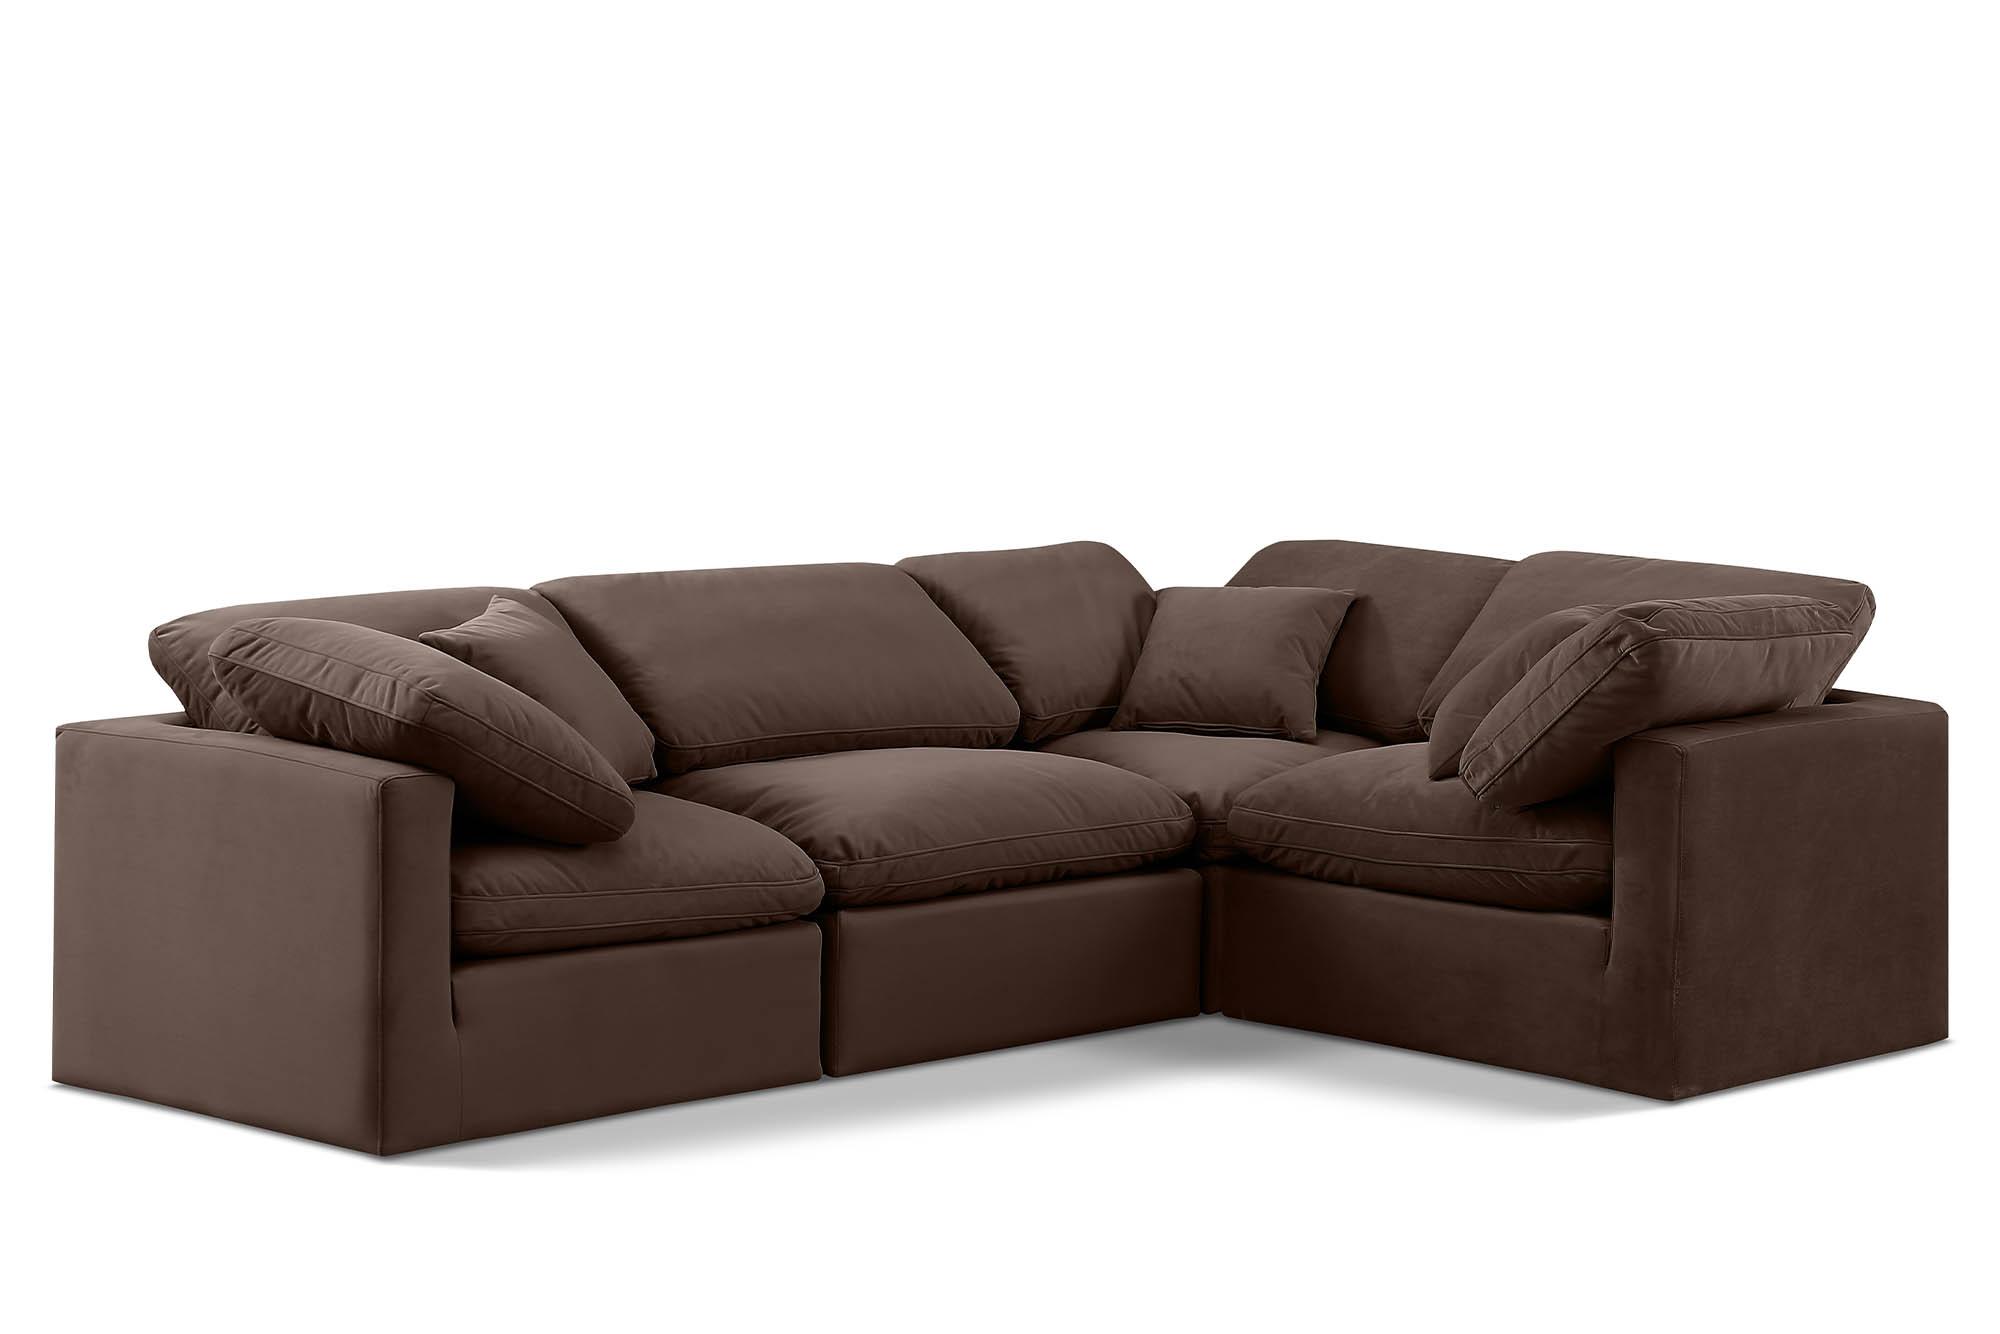 Contemporary, Modern Modular Sectional Sofa INDULGE 147Brown-Sec4C 147Brown-Sec4C in Brown Velvet